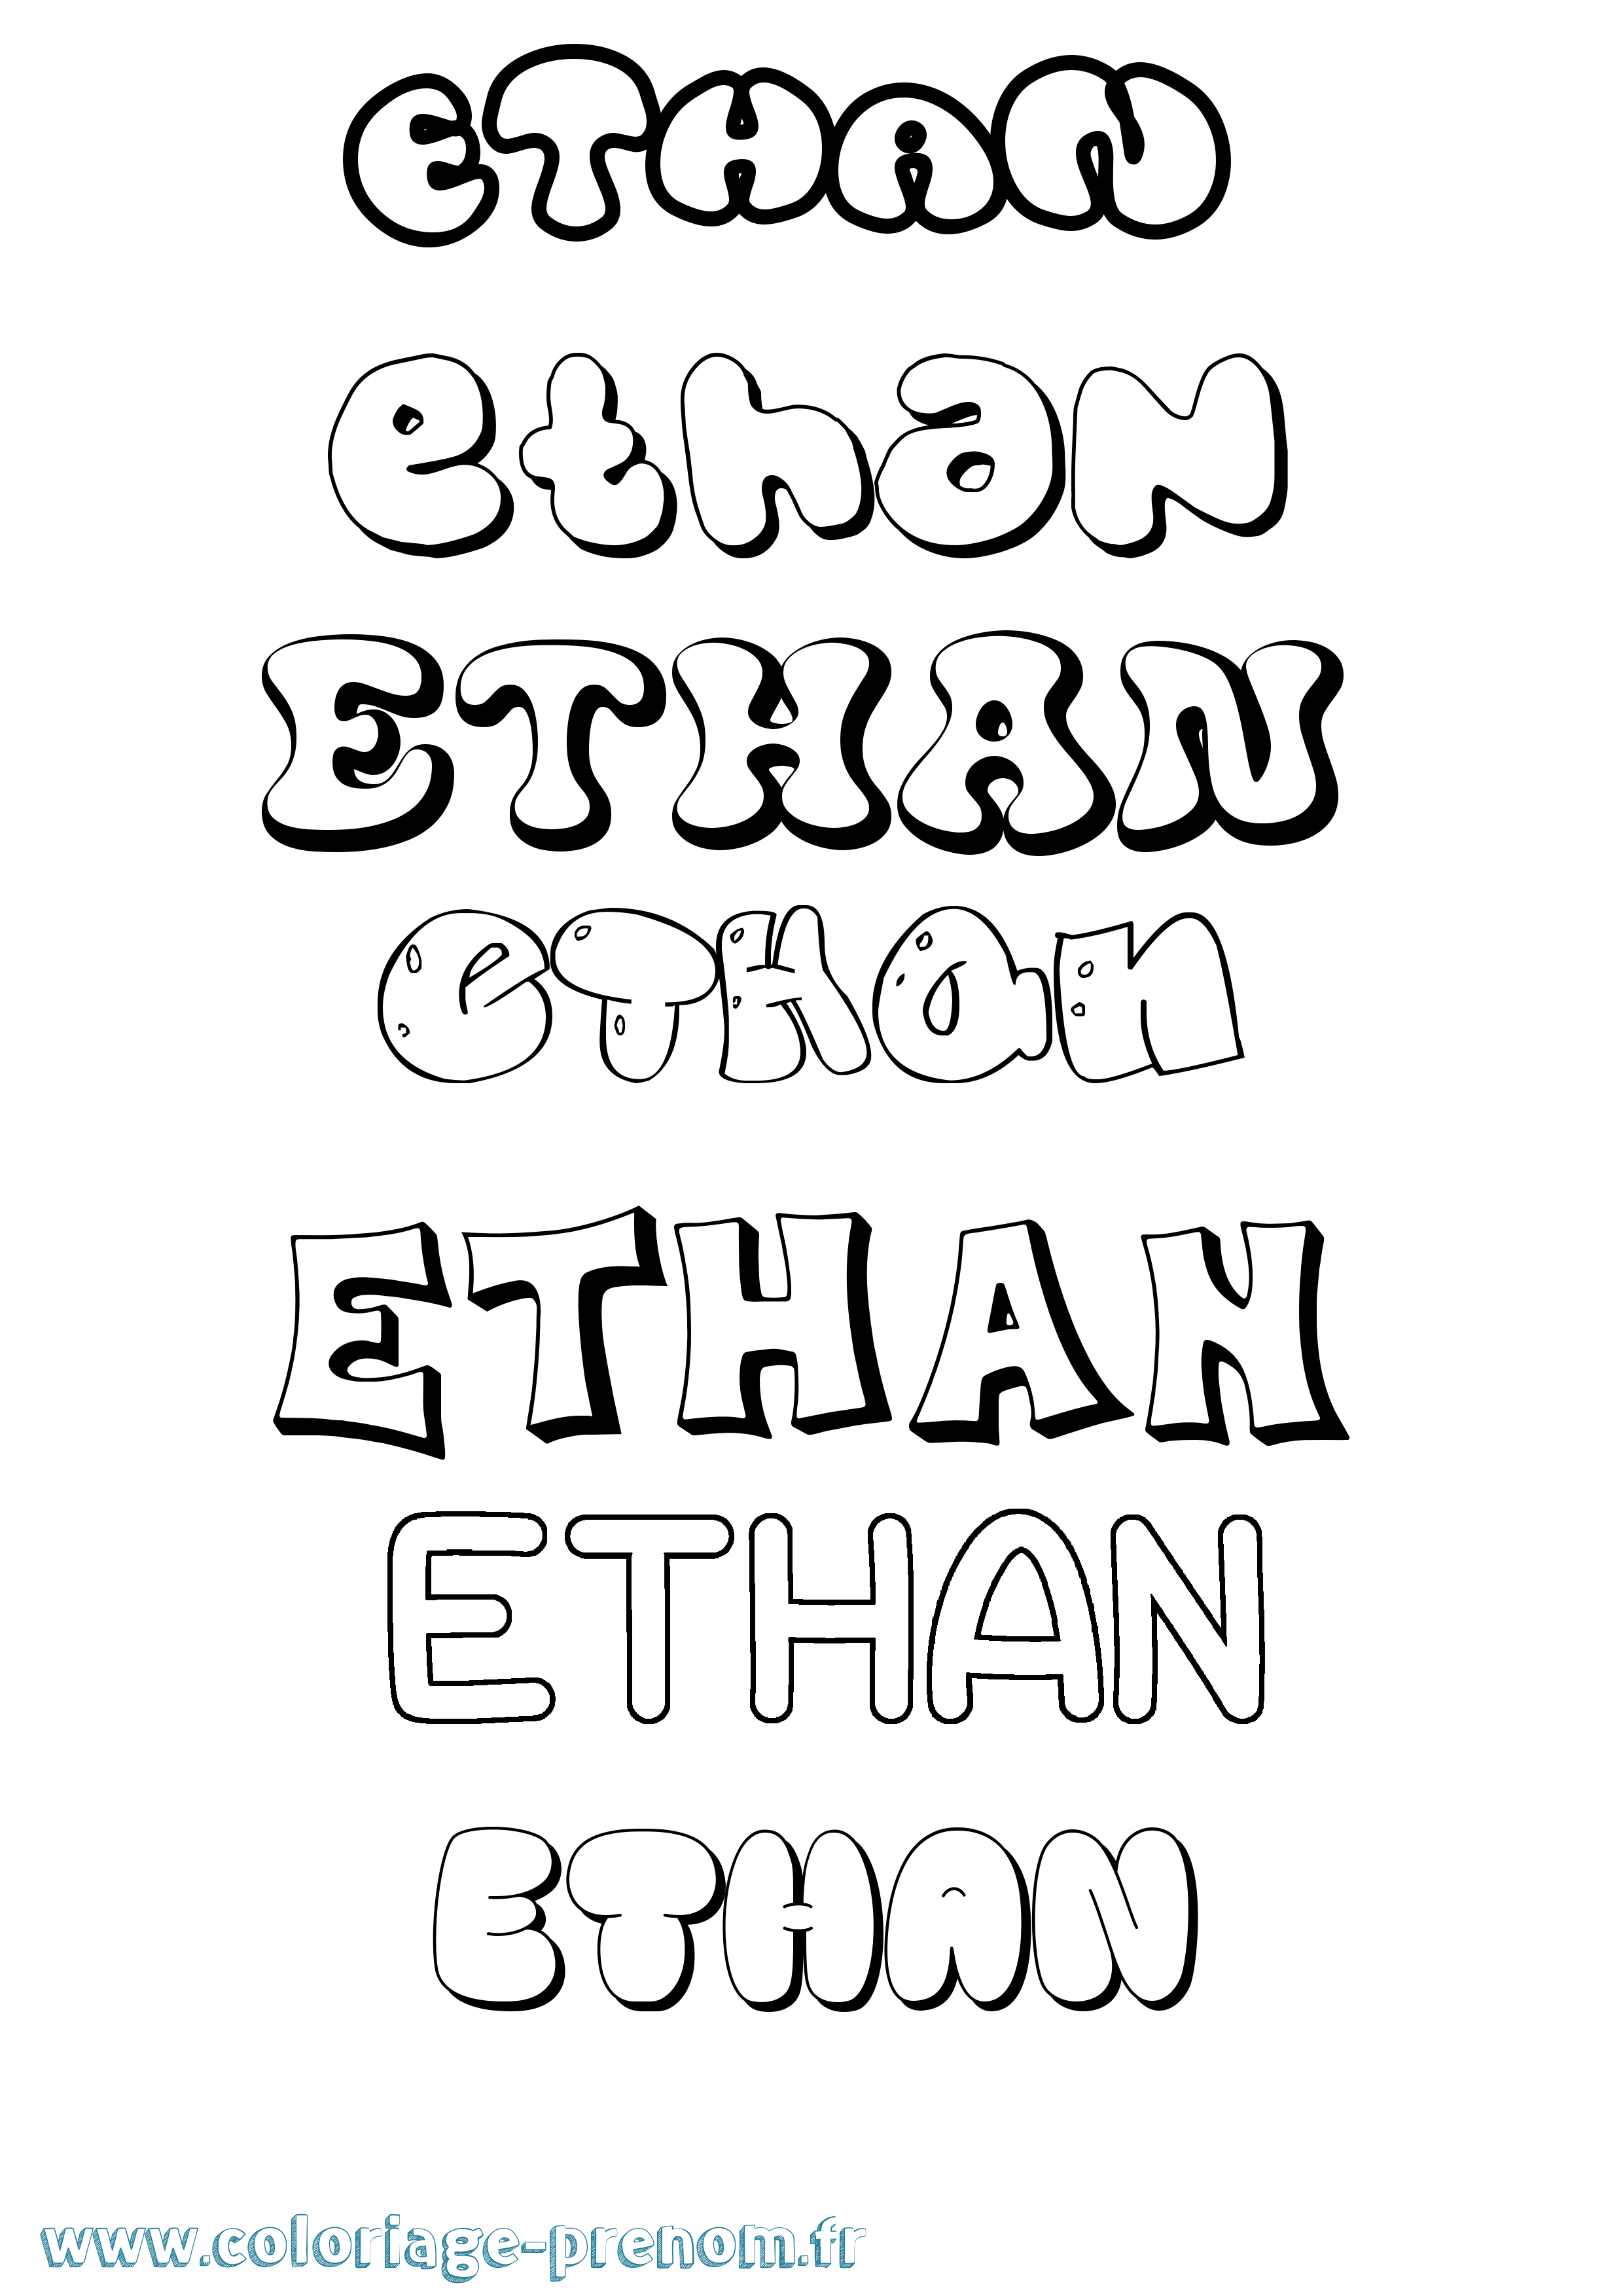 Coloriage prénom Ethan Bubble